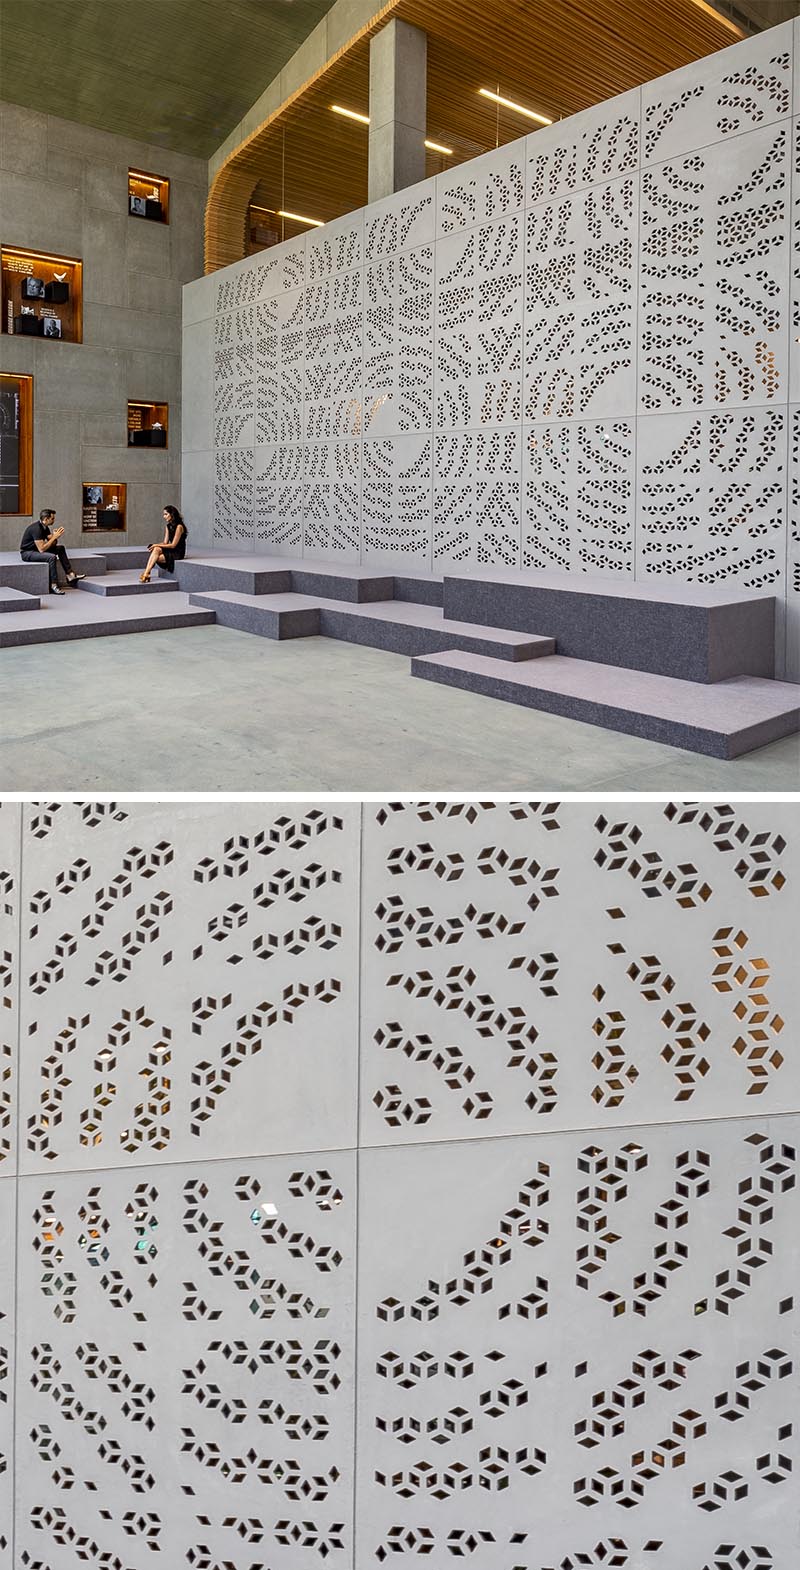 Большая стена, расположенная в просторном вестибюле, украшена геометрическими перфорациями, создающими общий круговой узор. #OfficeDesign # WorkplaceDesign #ArtisticWall # Перфорированная стена